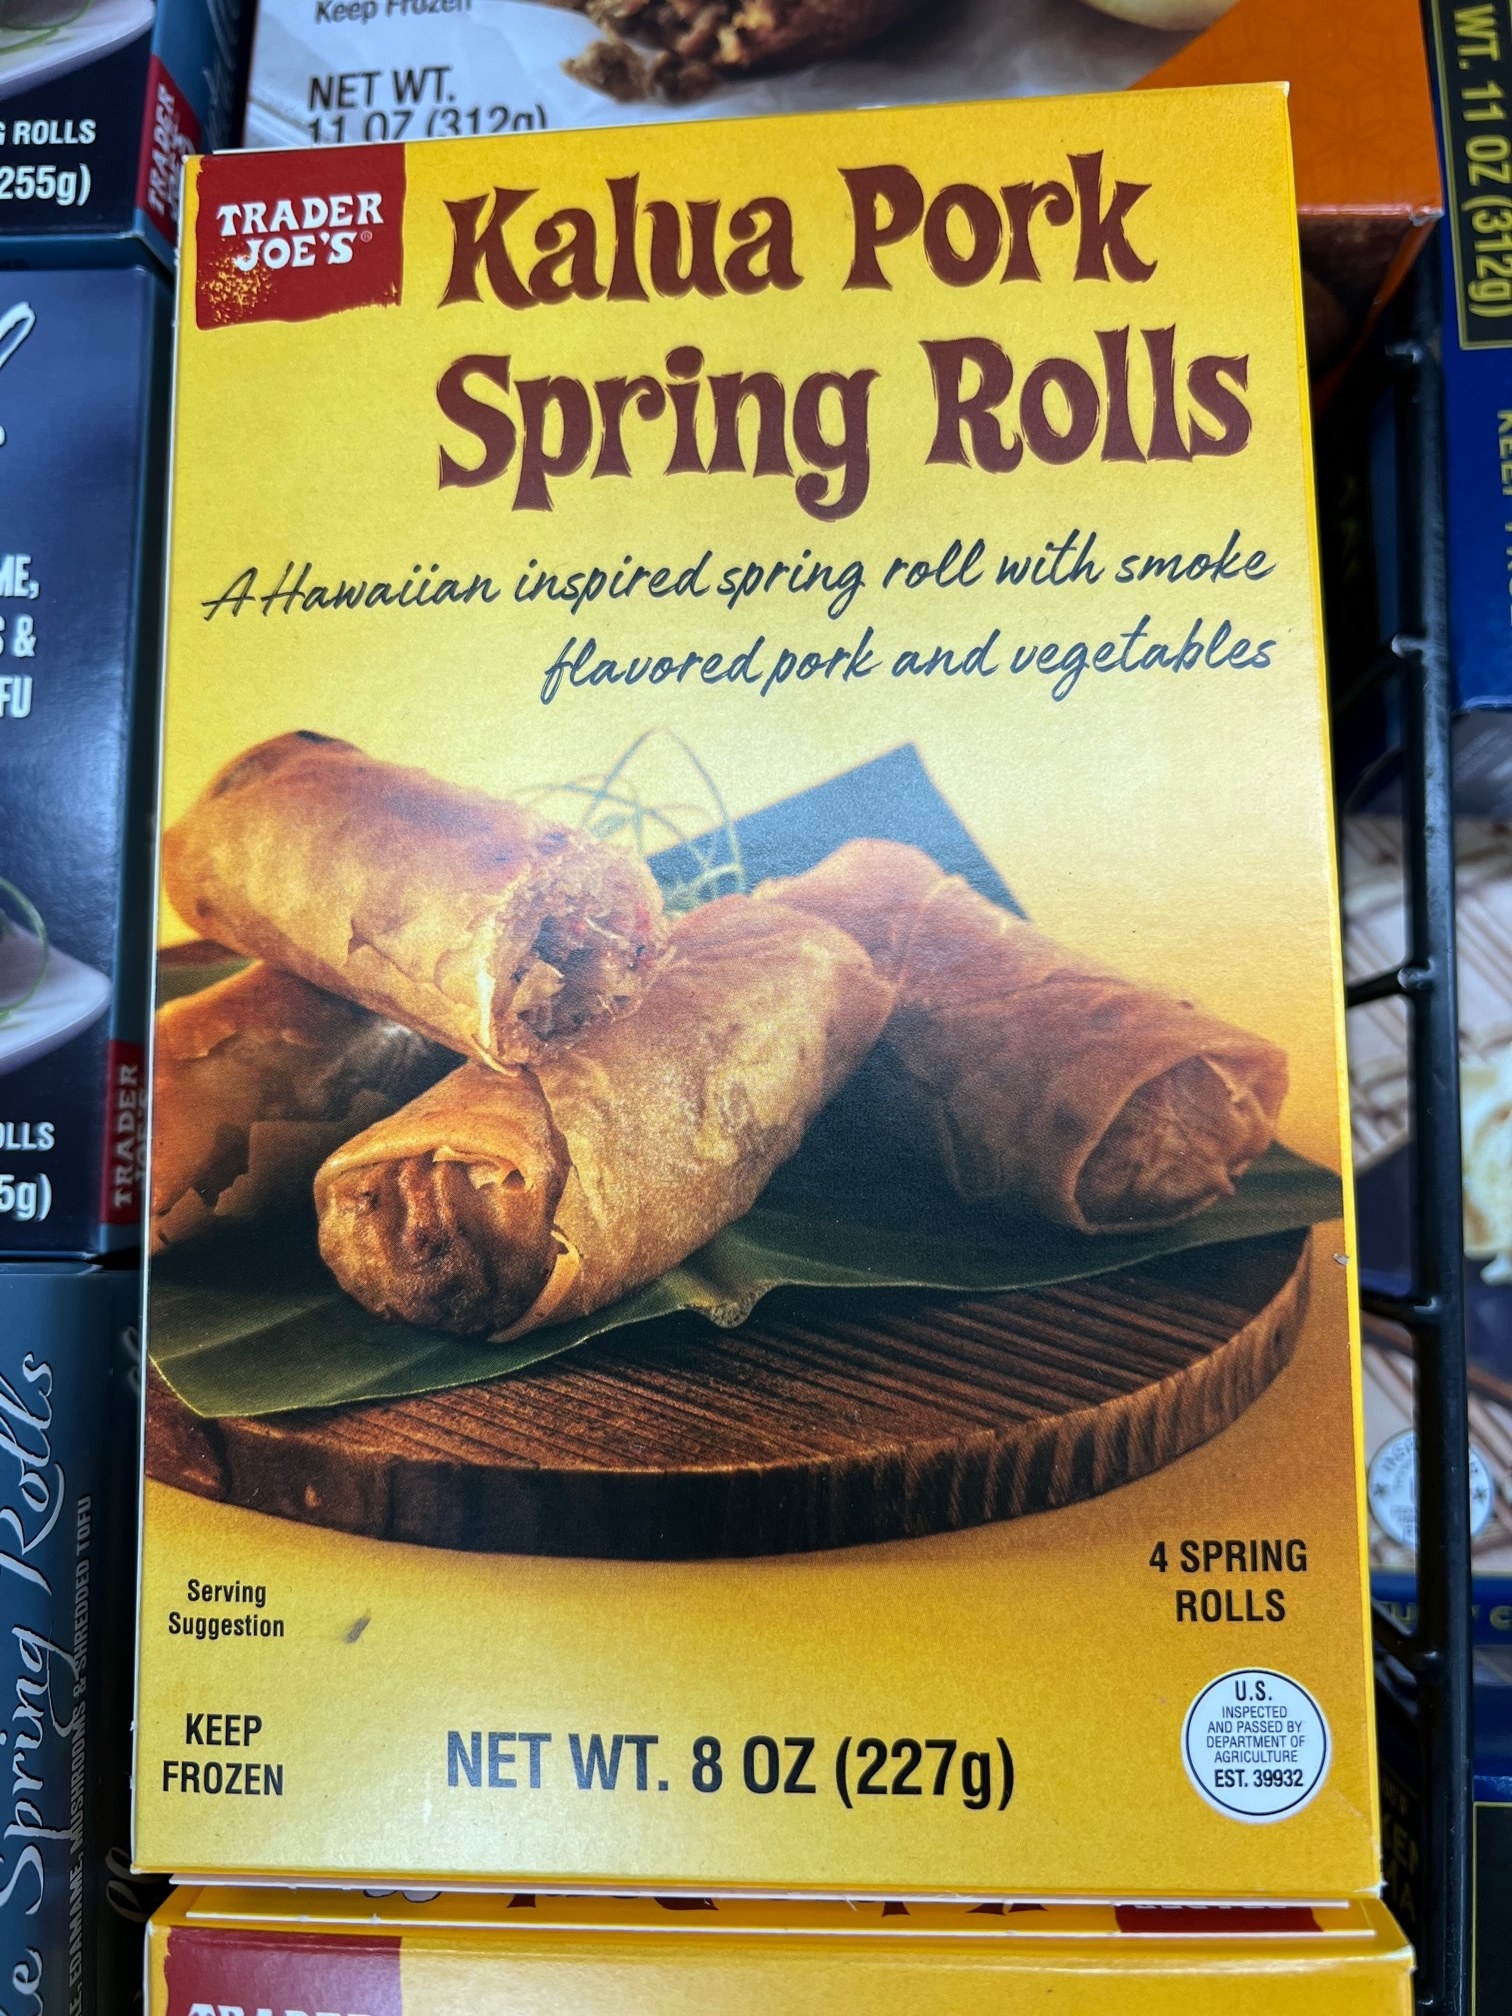 A box of Kalua Pork Spring Rolls